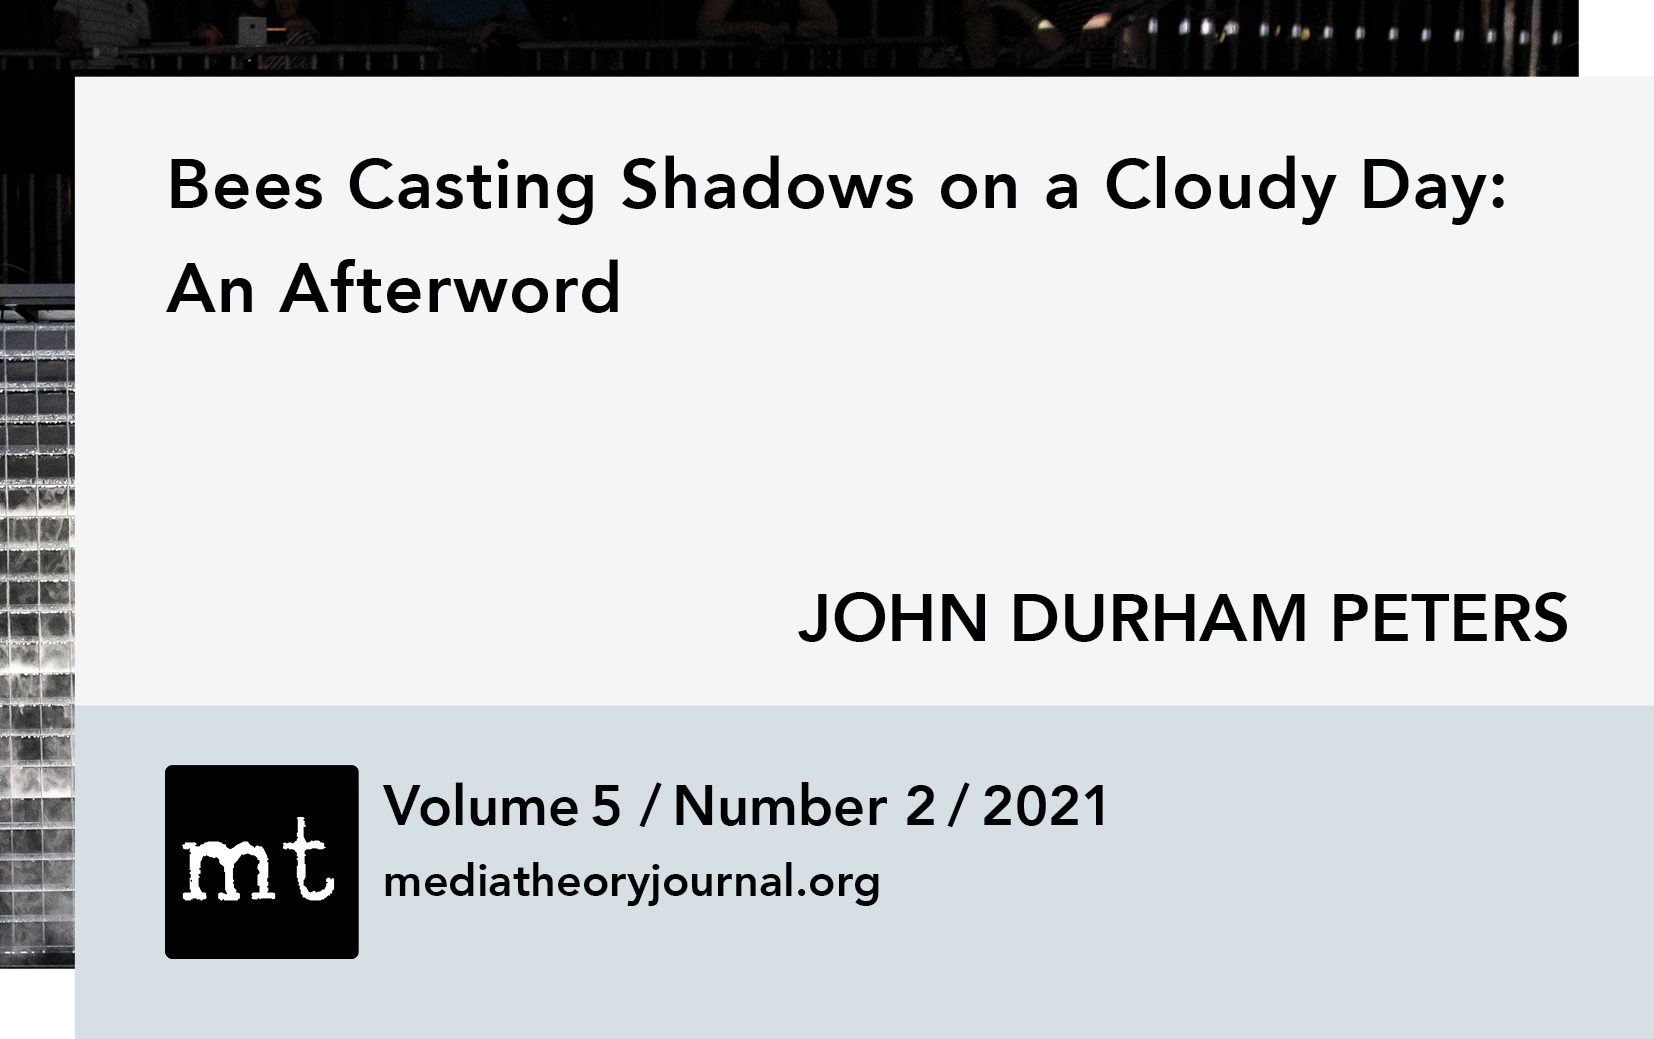 John Durham Peters: An Afterword